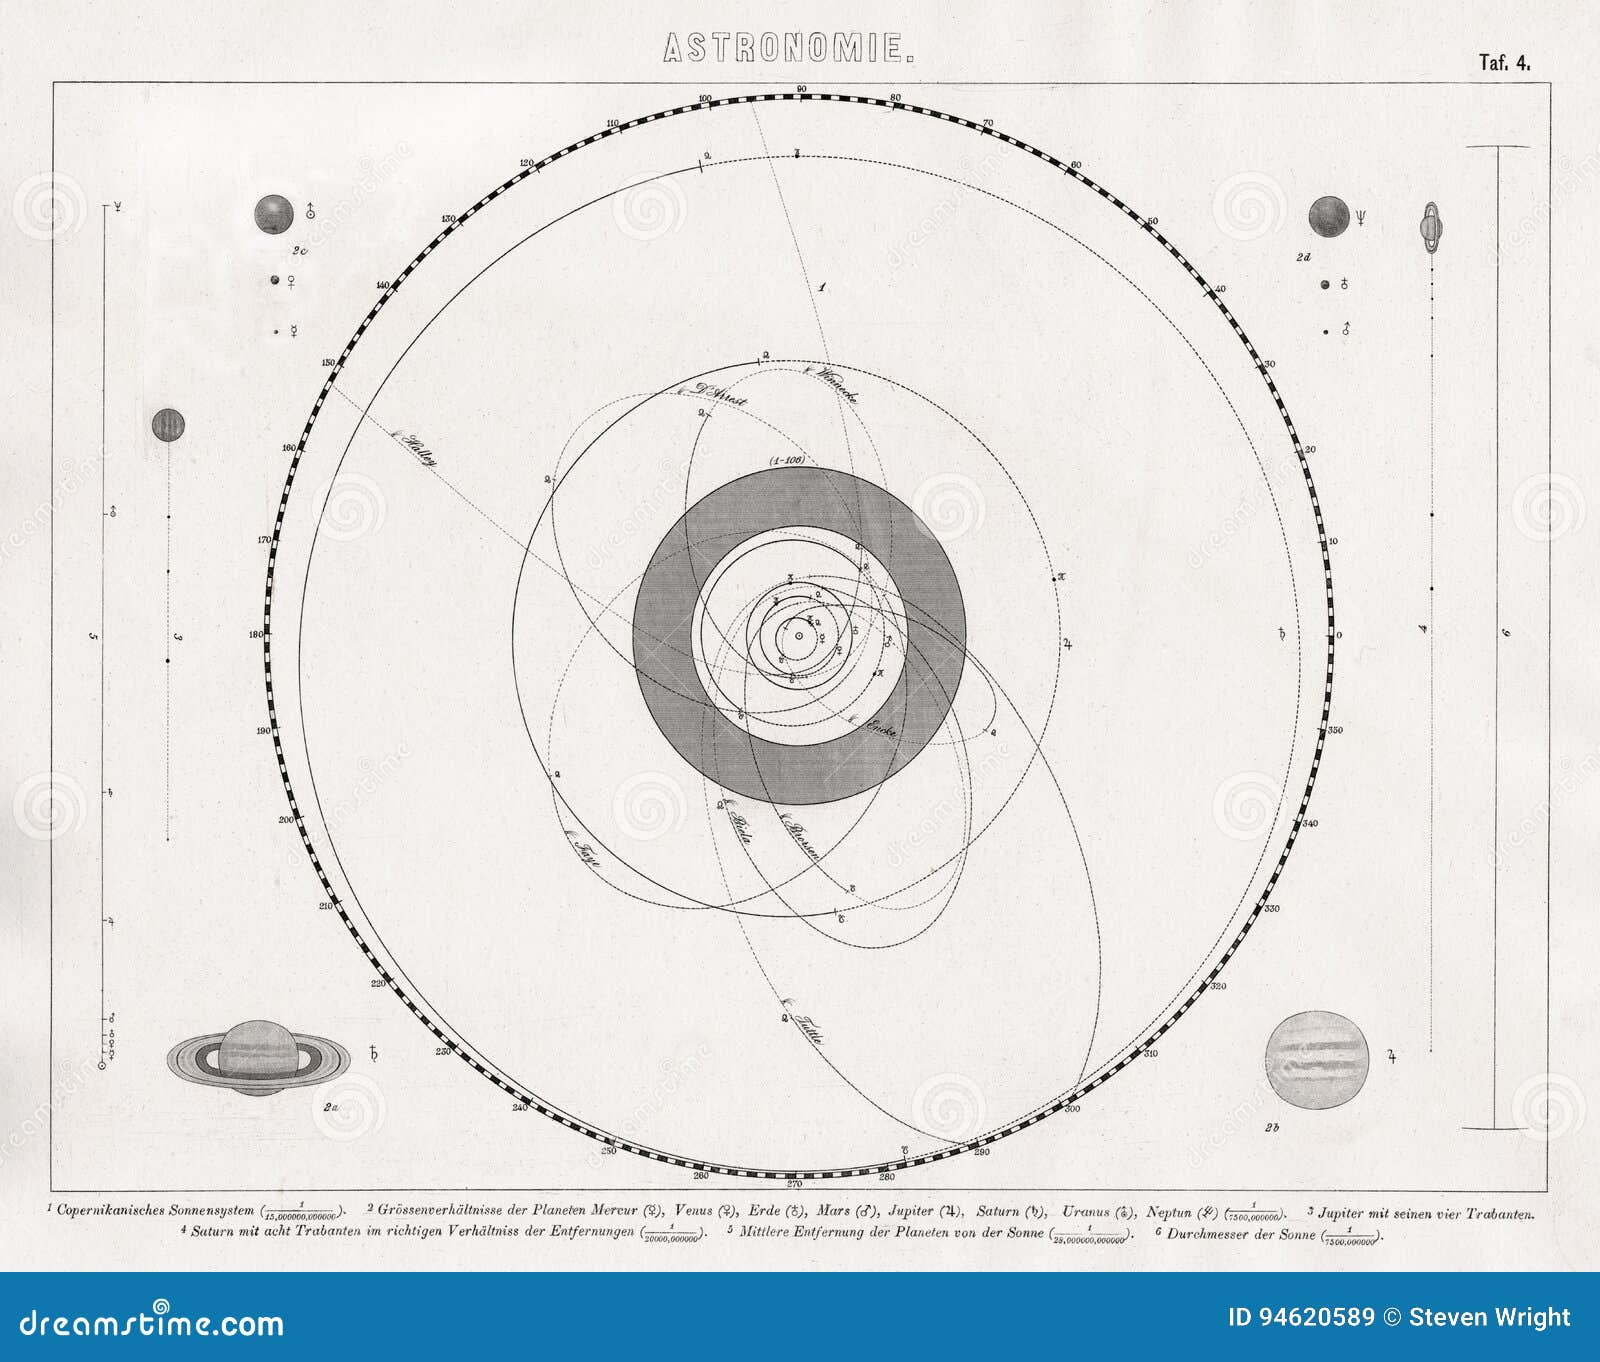 Um mapa do sistema solar mostra a época do ano.